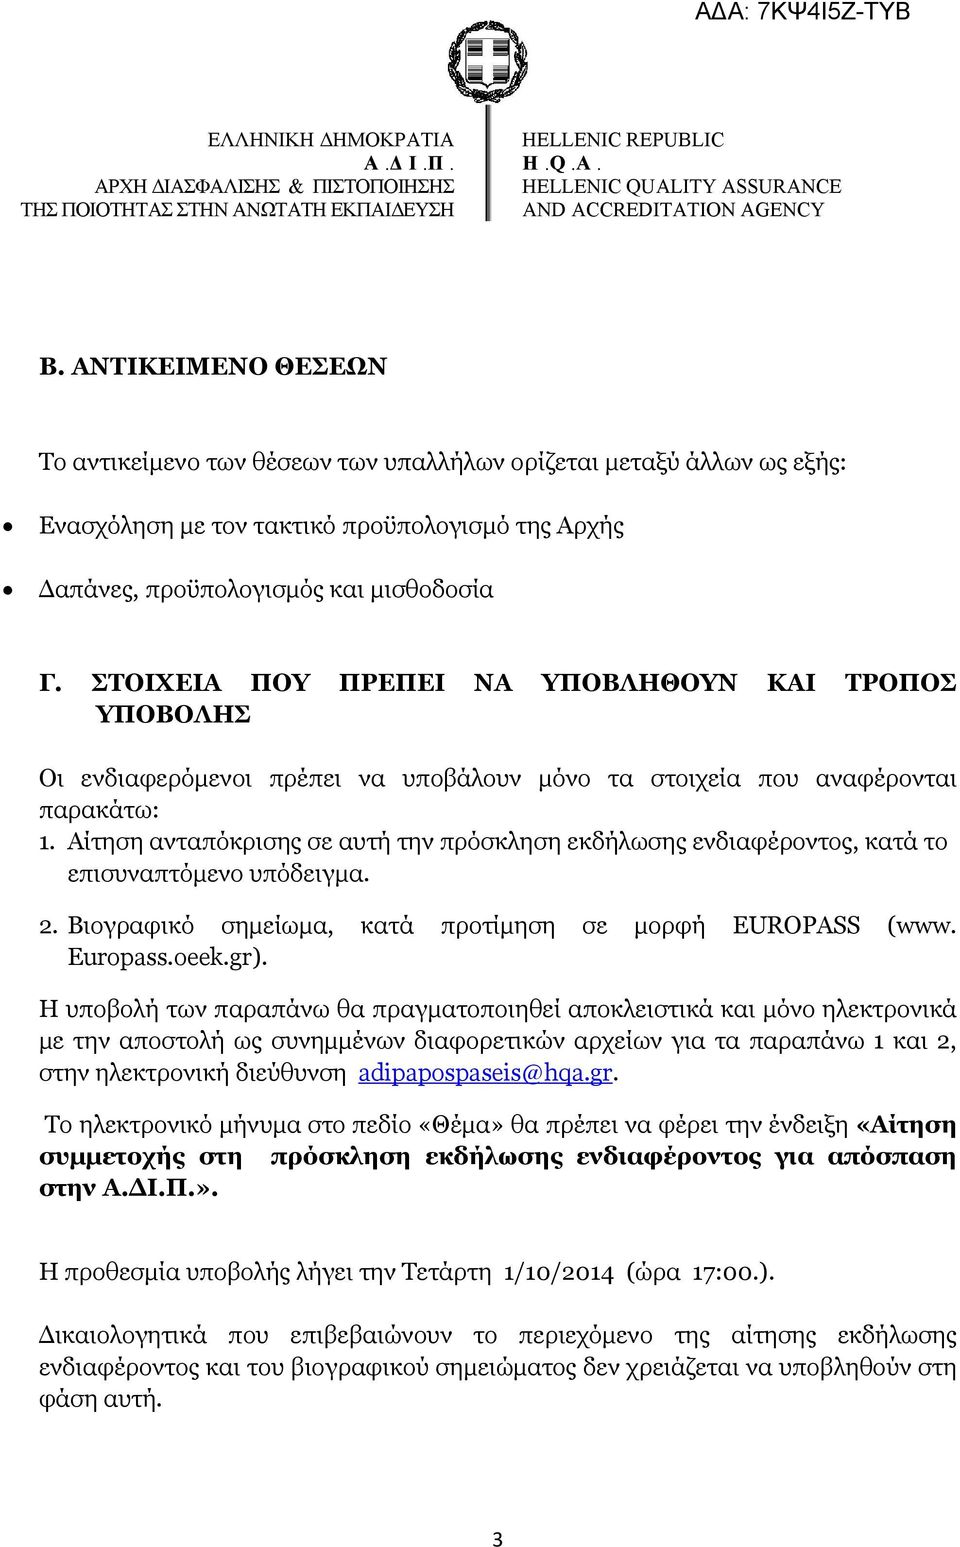 Αίτηση ανταπόκρισης σε αυτή την πρόσκληση εκδήλωσης ενδιαφέροντος, κατά το επισυναπτόμενο υπόδειγμα. 2. Βιογραφικό σημείωμα, κατά προτίμηση σε μορφή EUROPASS (www. Europass.oeek.gr).